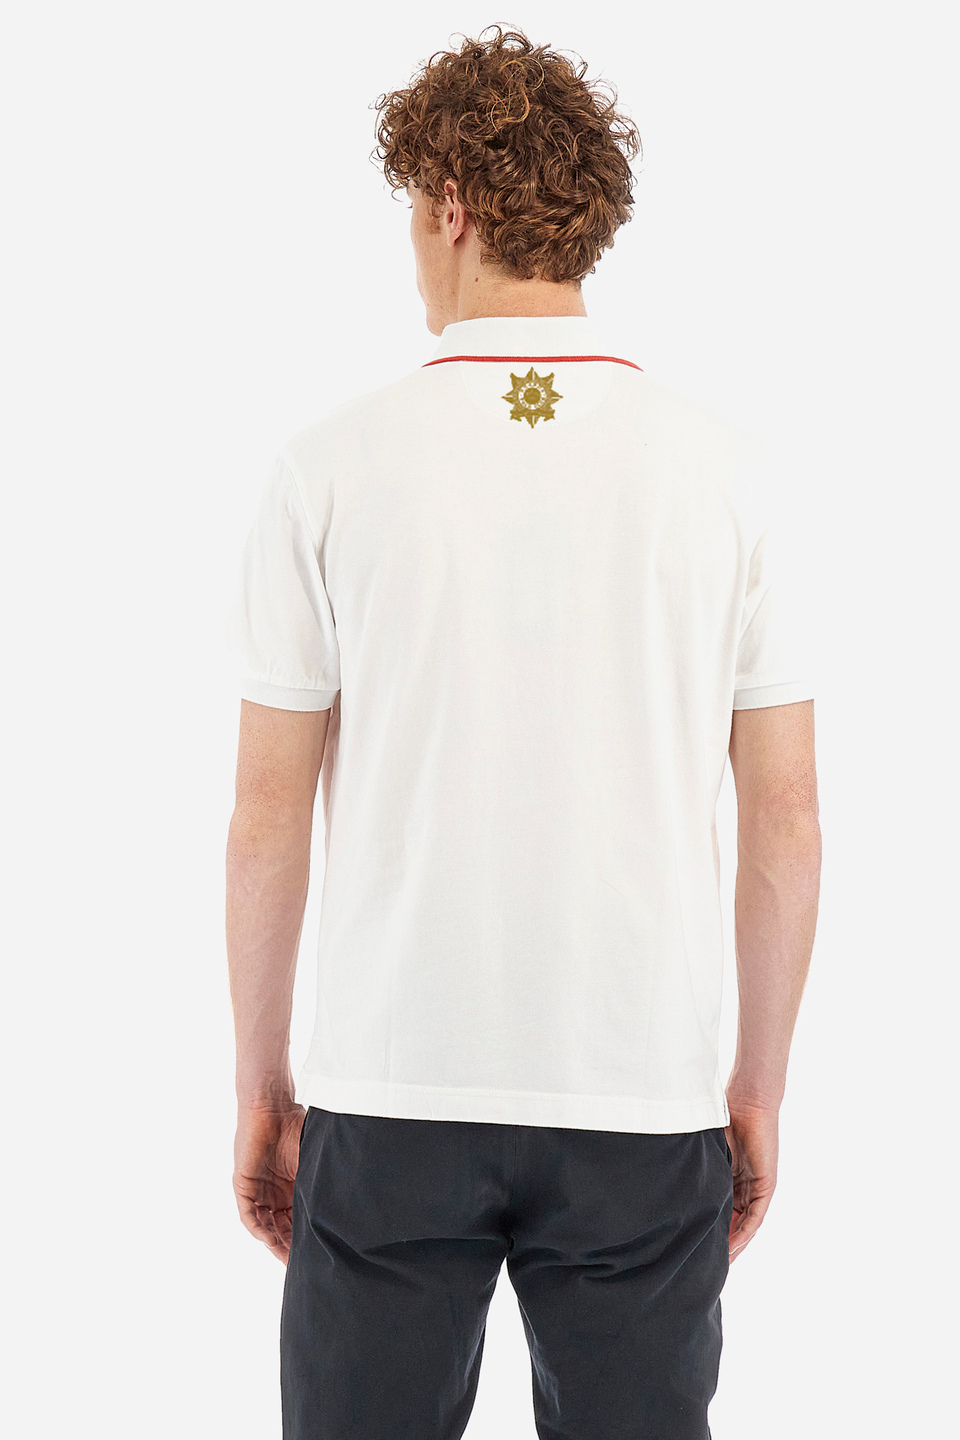 Herren-Kurzarm-Poloshirt aus Stretch-Baumwolle mit normaler Passform - Vinicio | La Martina - Official Online Shop